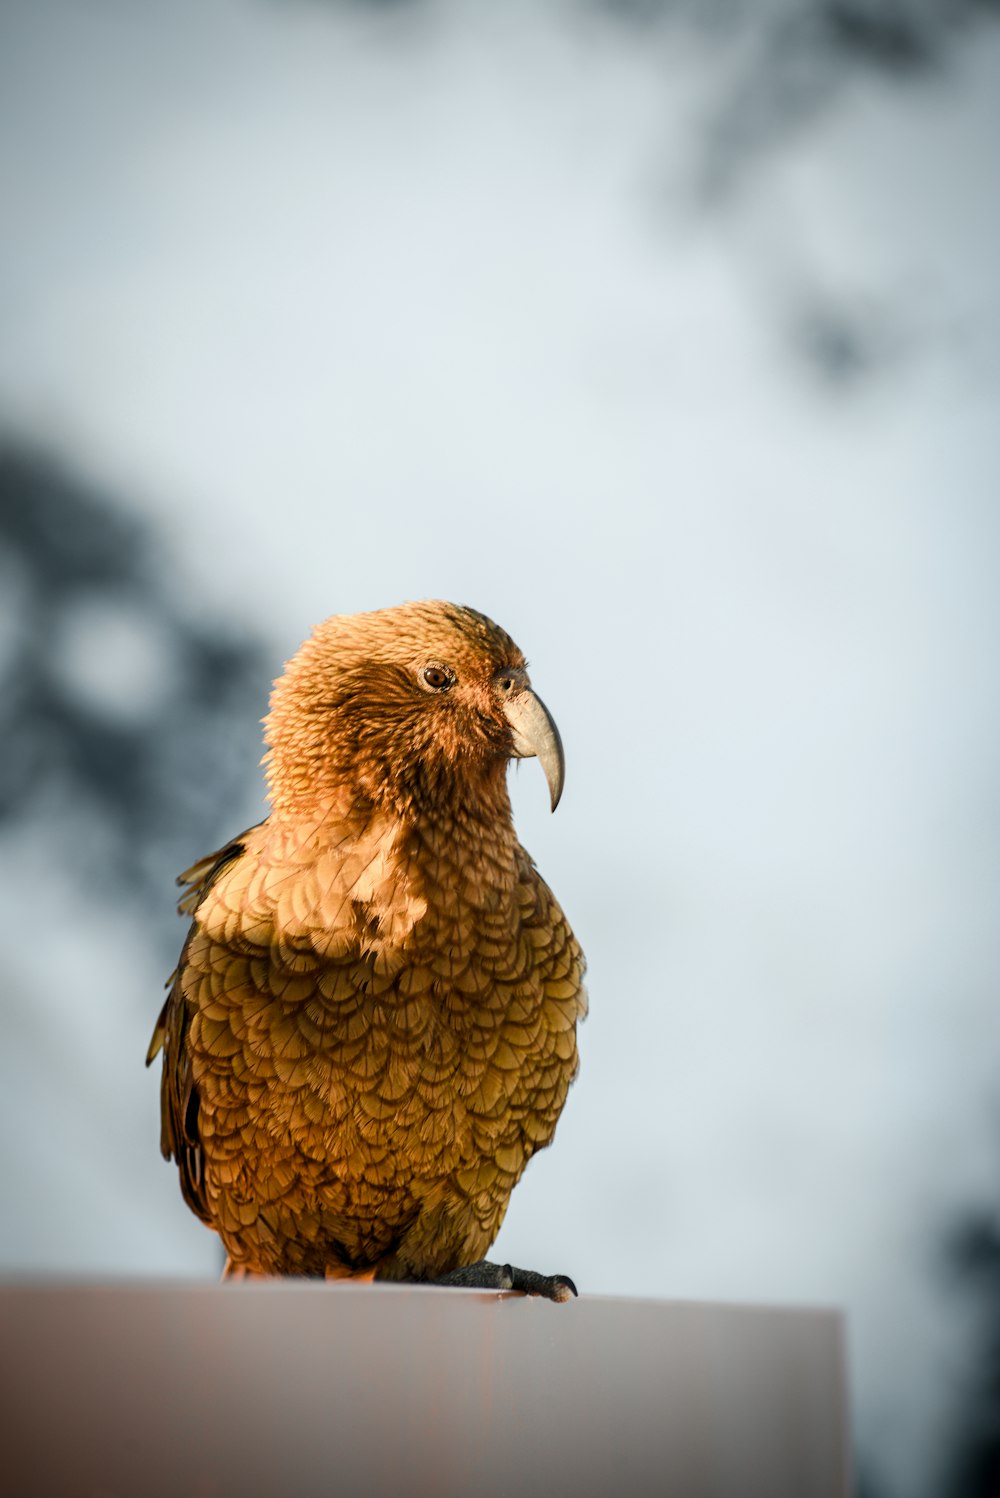 茶色の鳥のセレクティブフォーカス写真